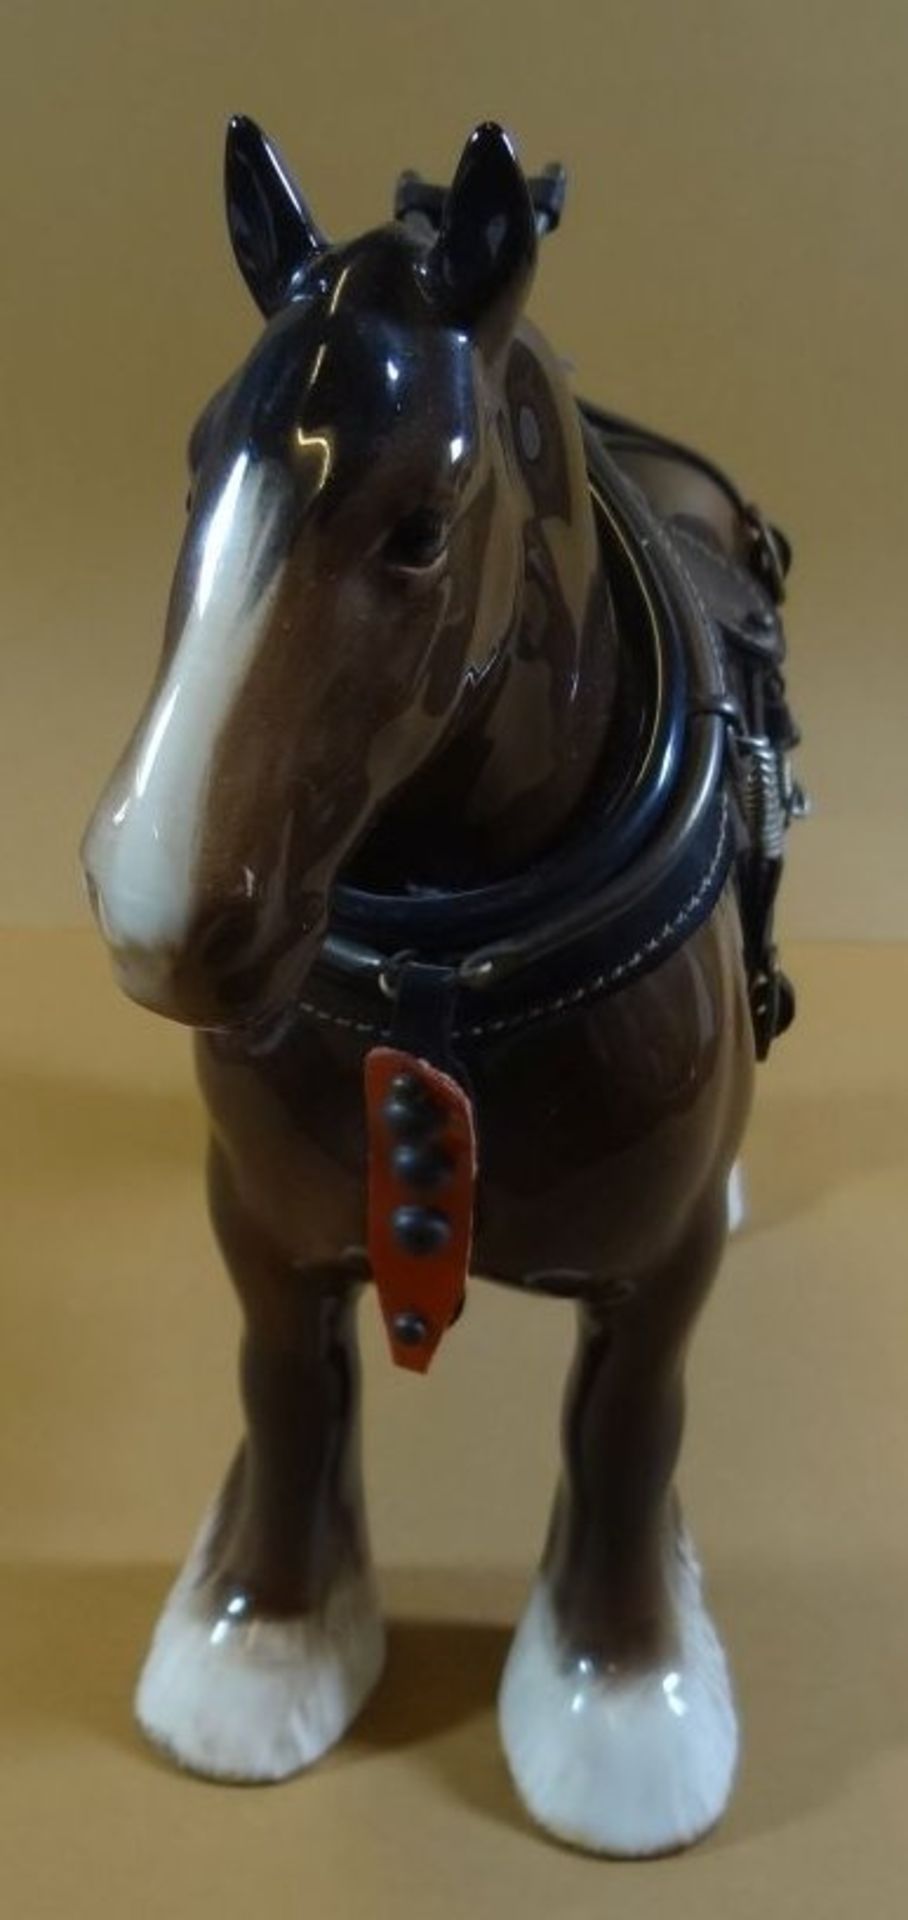 gr. Pferd "Beswick" England, mit Zaumzeug  H-21 cm, L-25 cm - Bild 2 aus 5